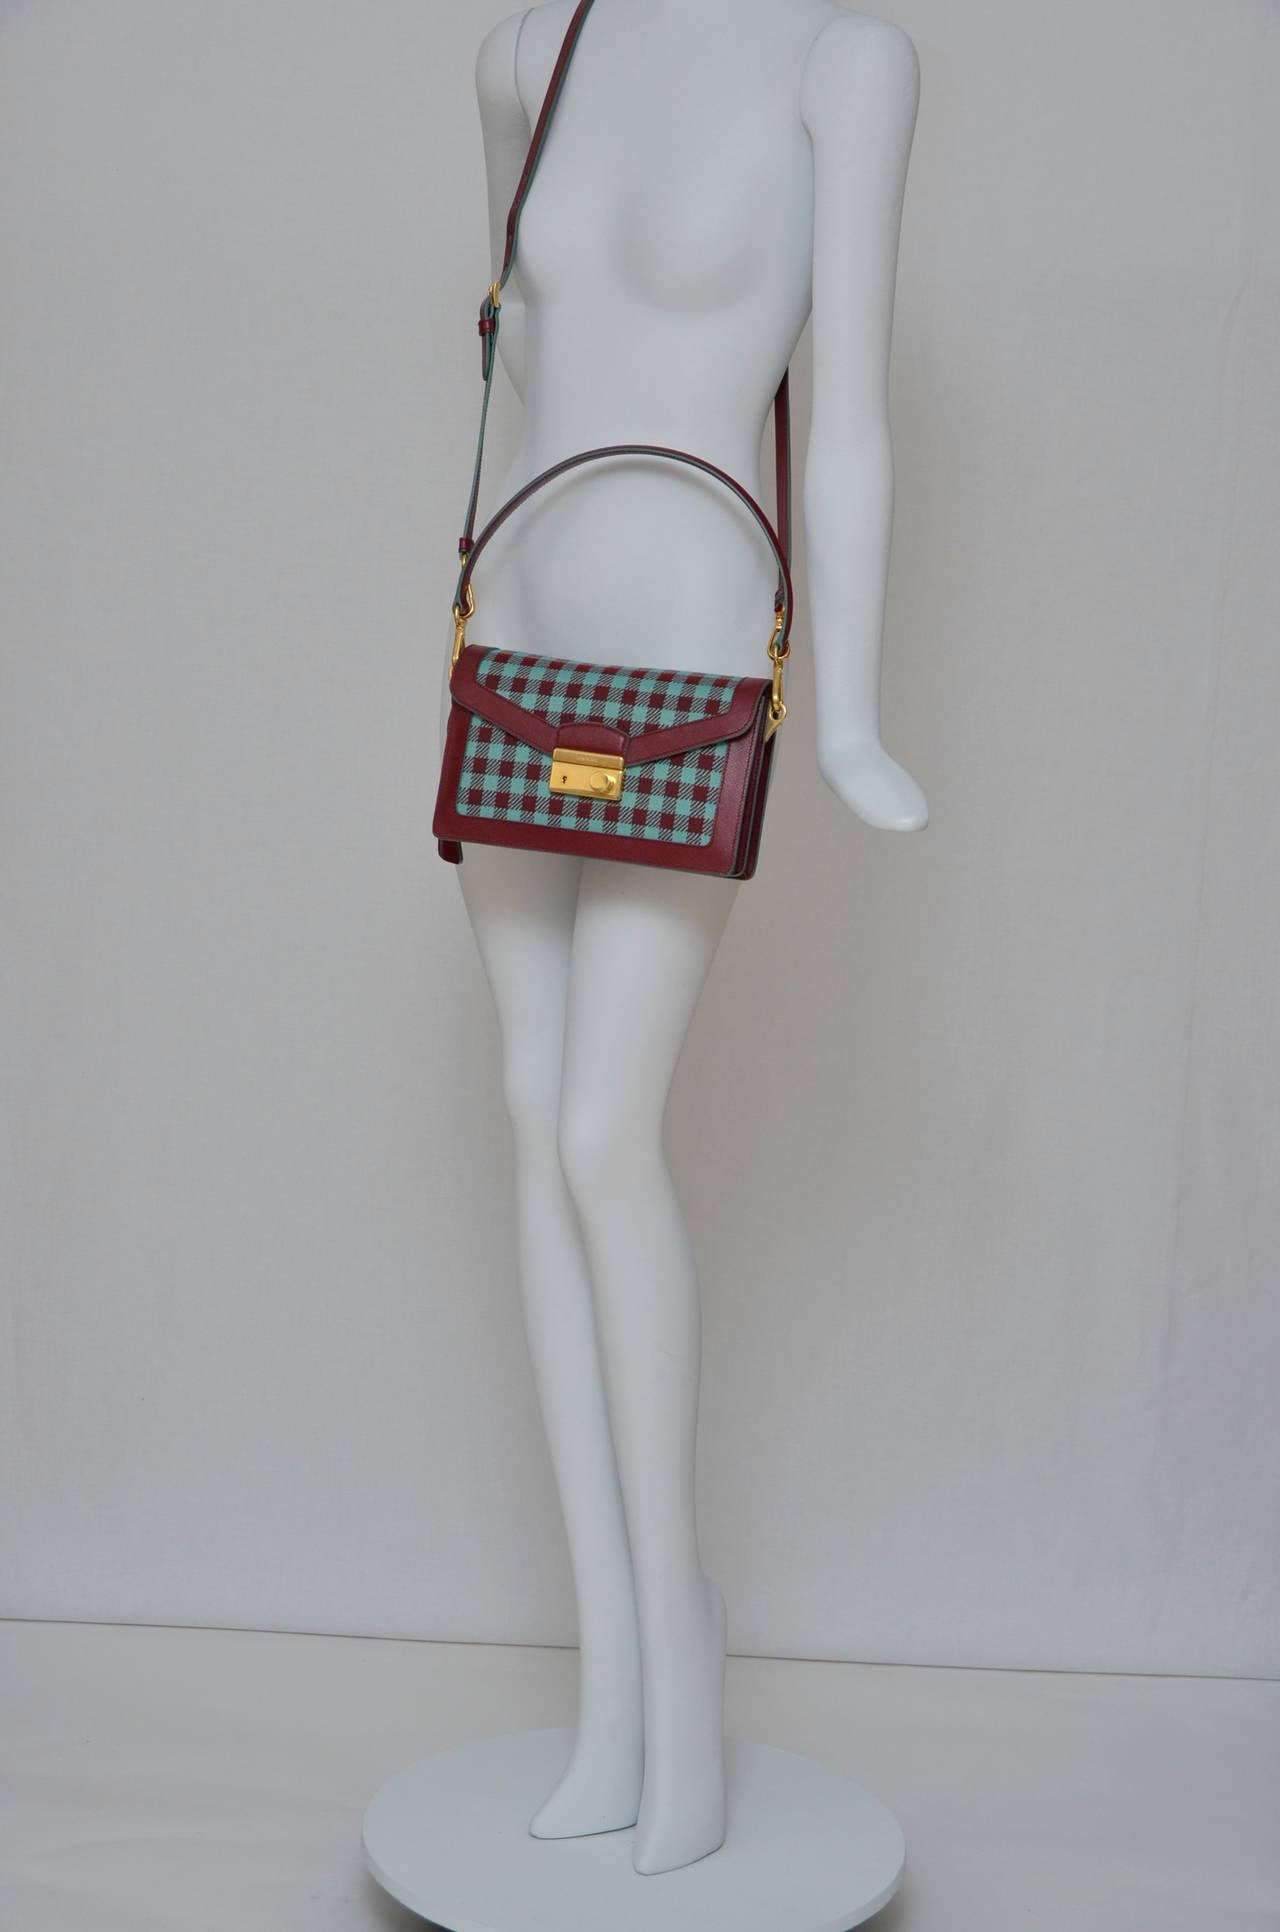 Prada Saffiano Leather/Fabric Mix Handbag 3